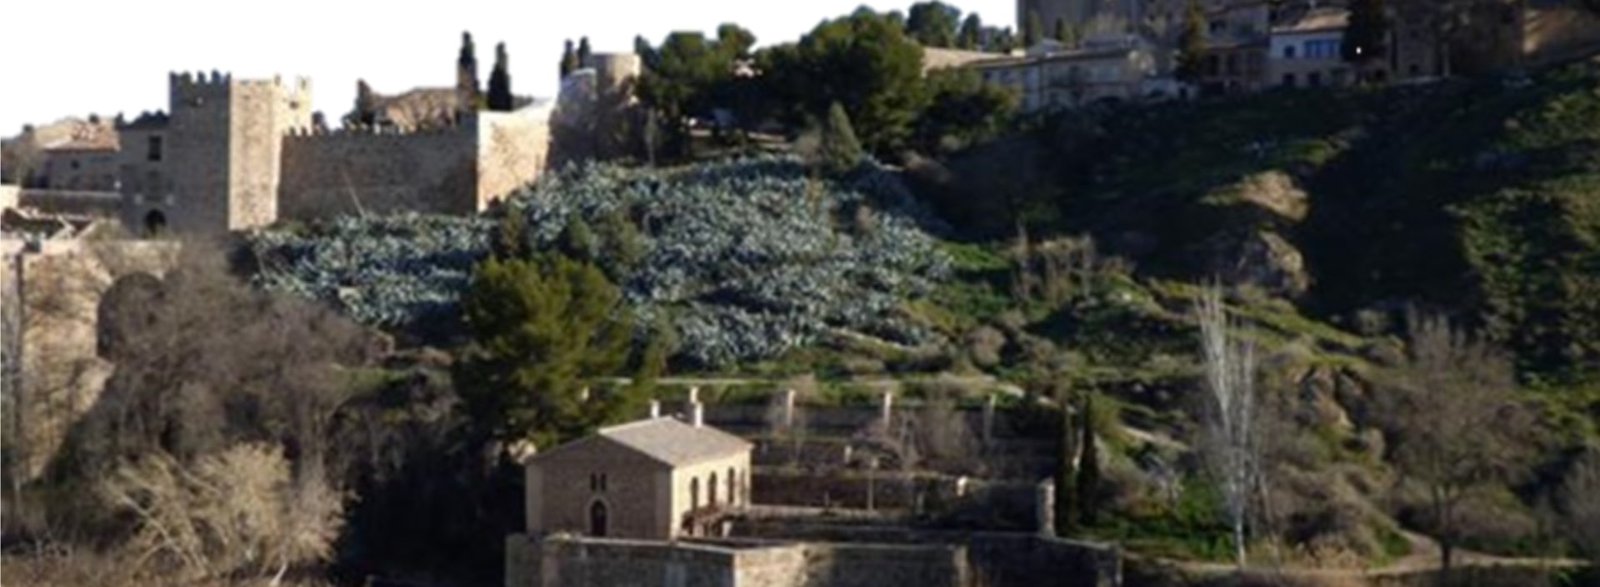 Visita guiada Judería de Toledo - Orígenes de Europa